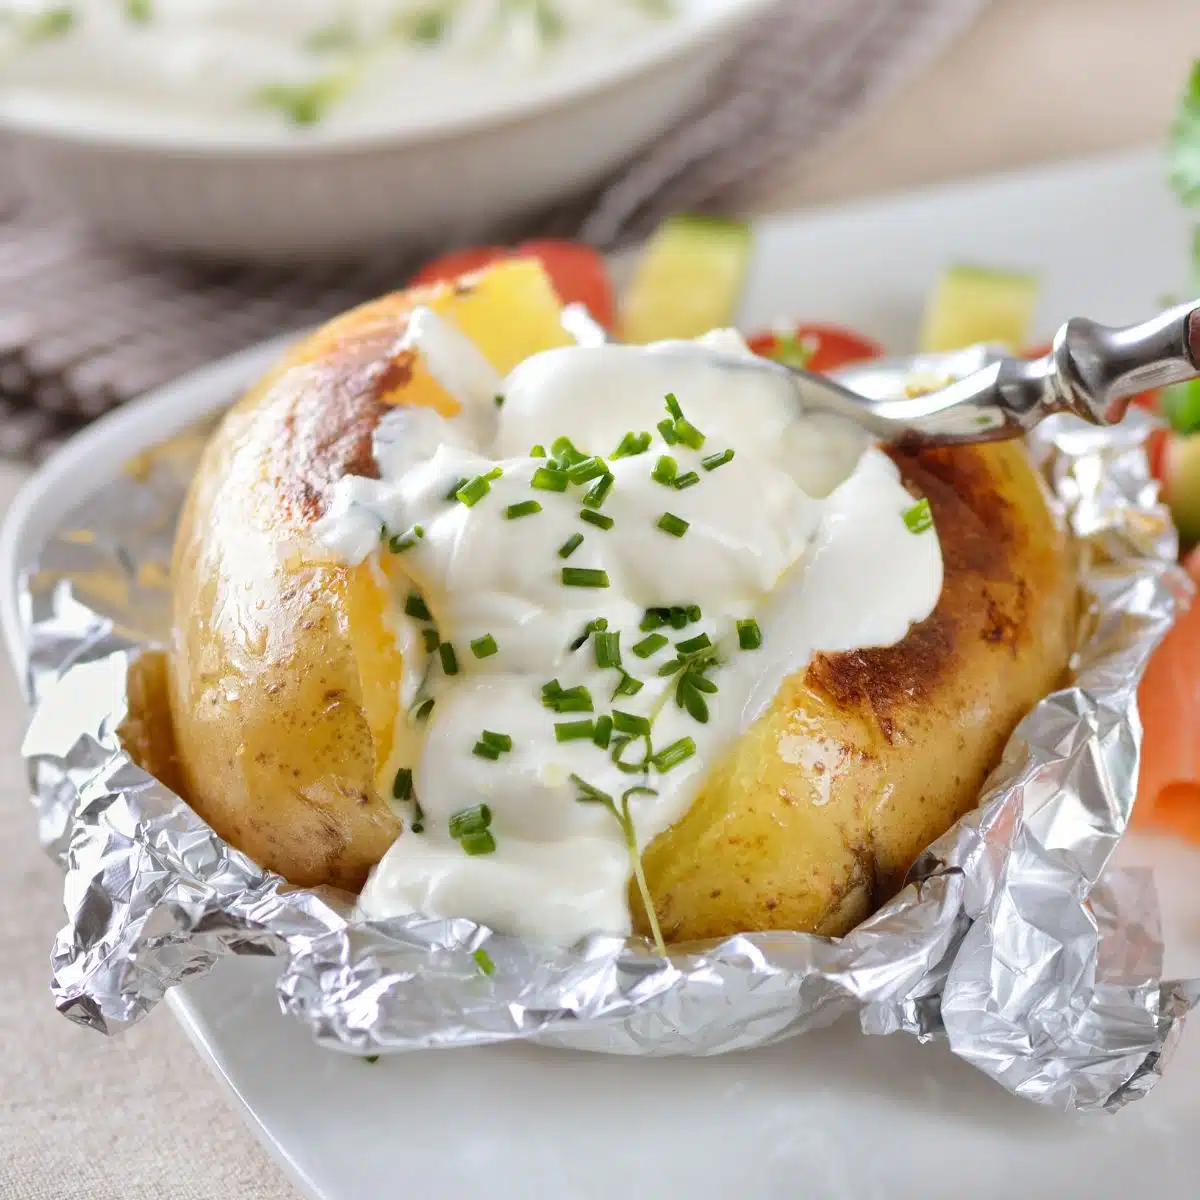 Ekşi krema ve frenk soğanı ile beyaz tabakta fırında patates gösteren kare görüntü.